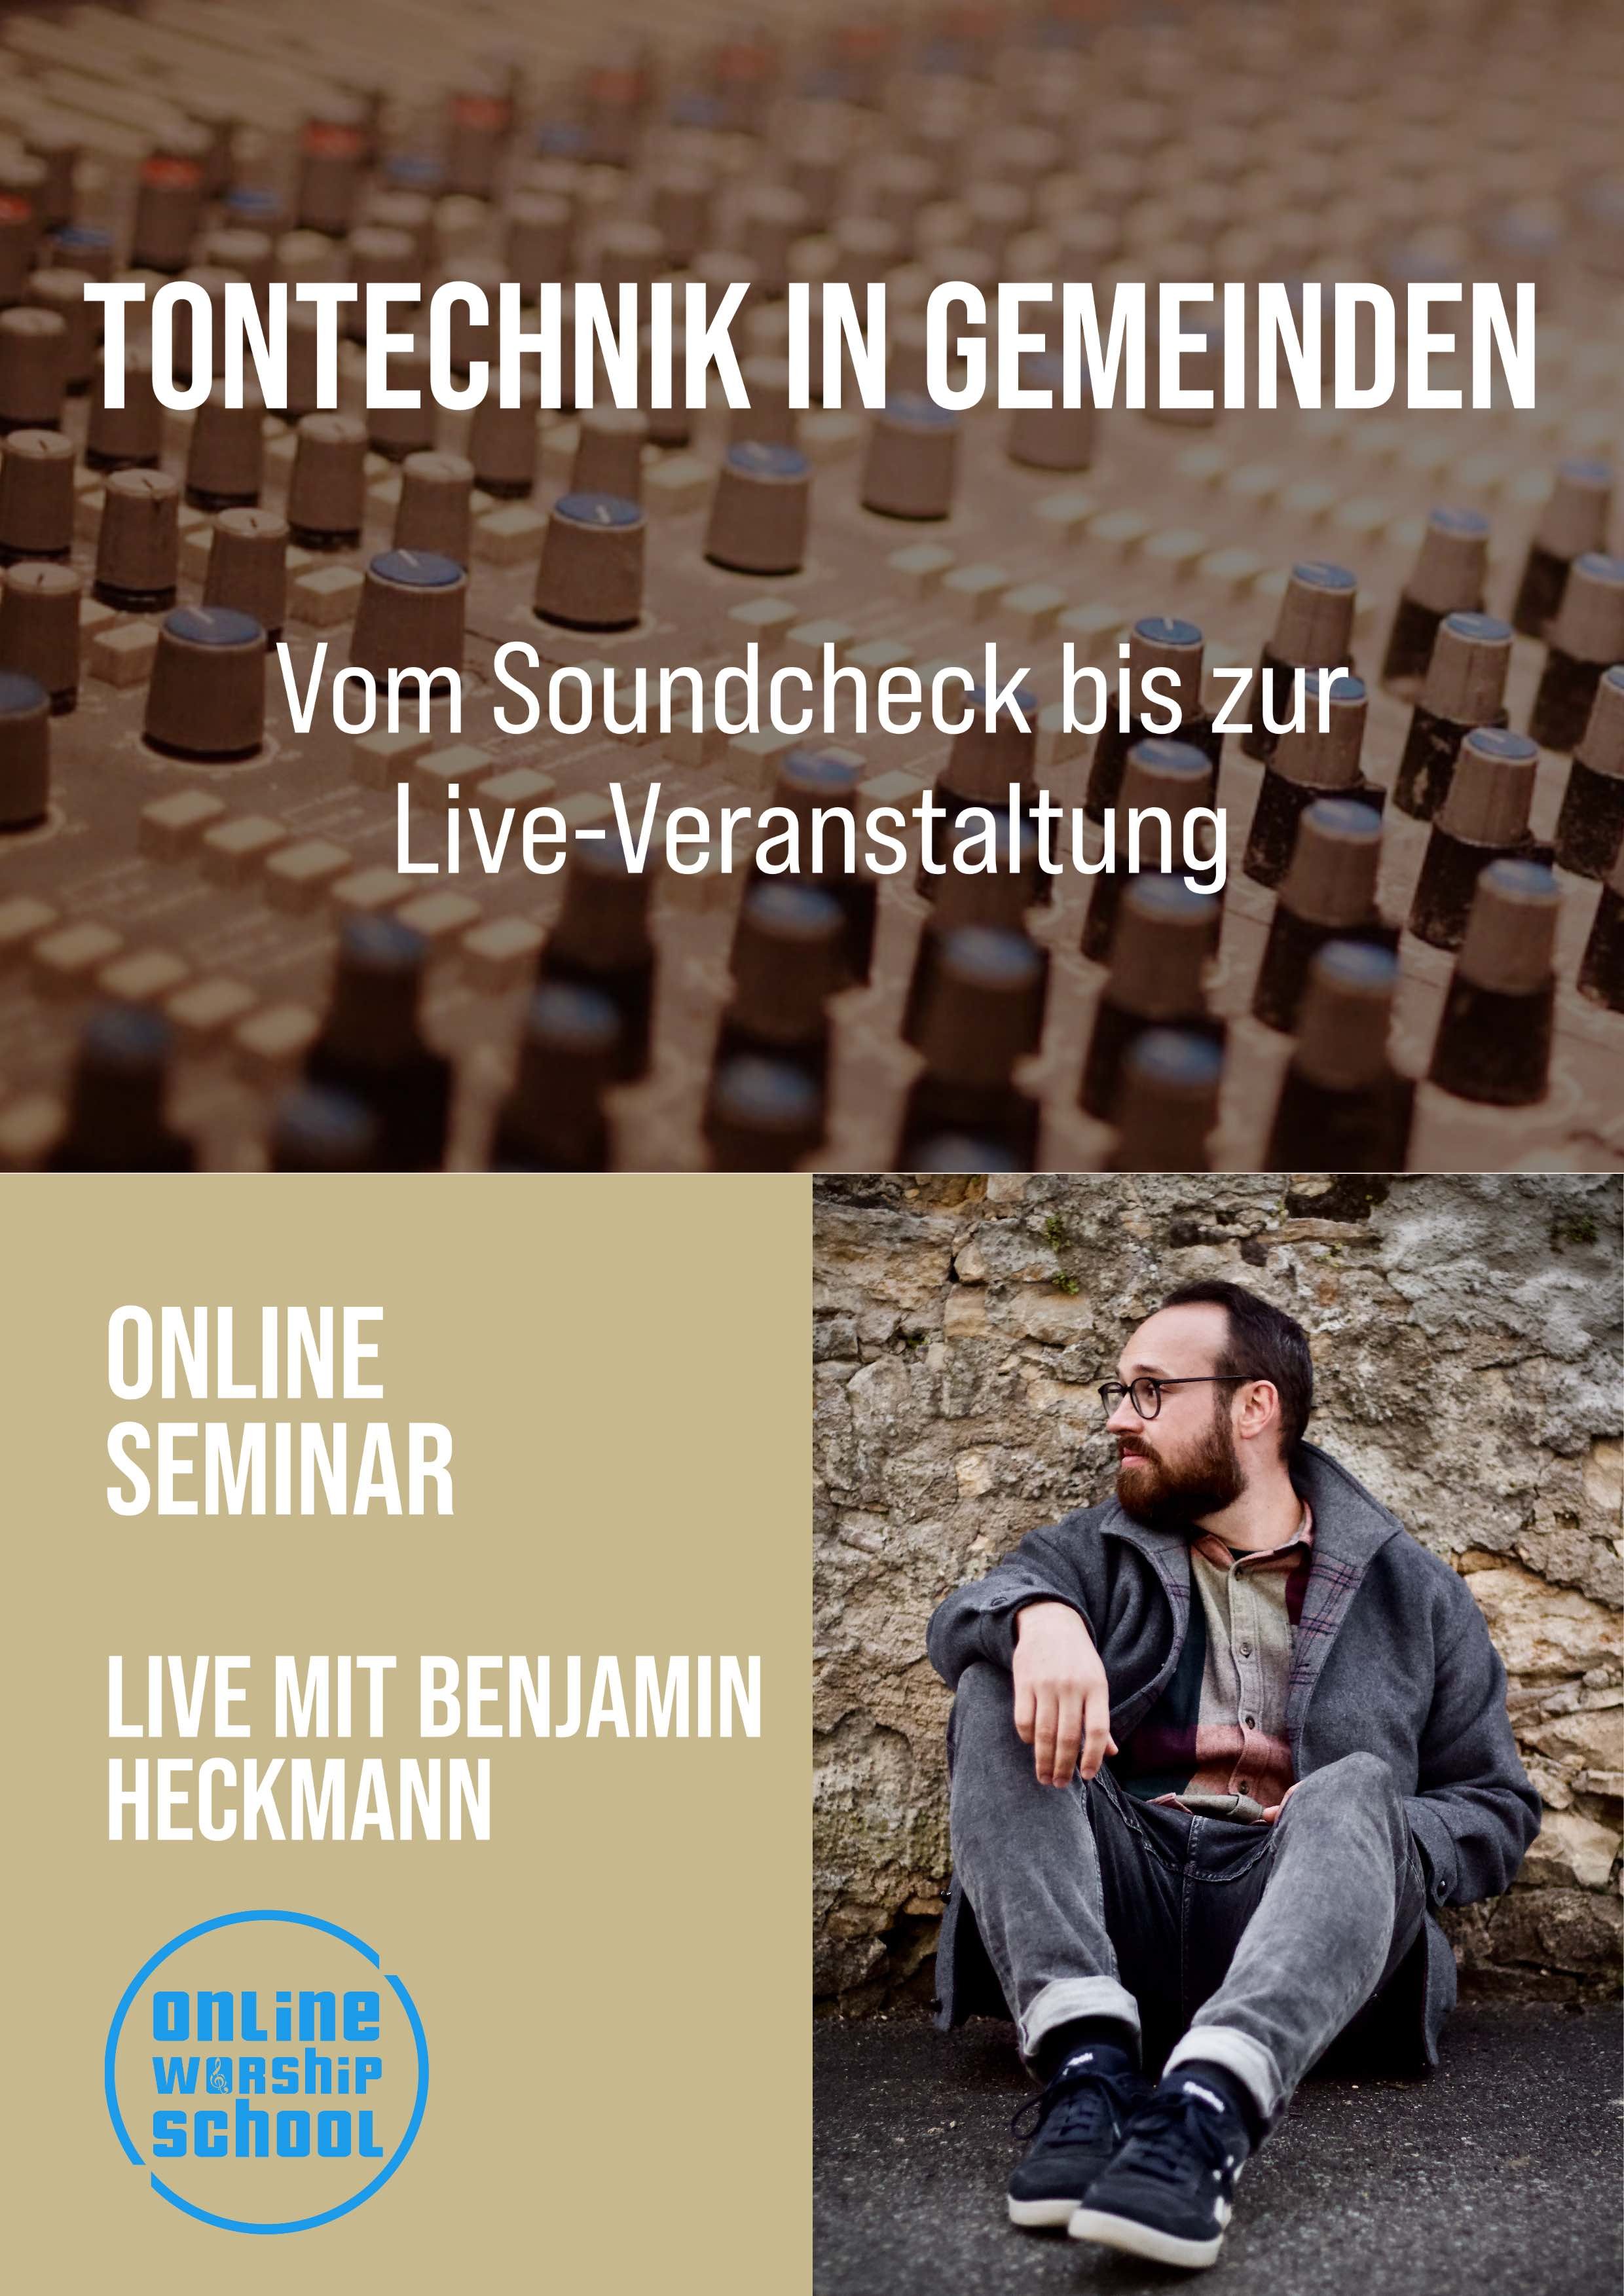 Live-Online Seminar mit Benjamin Heckmann